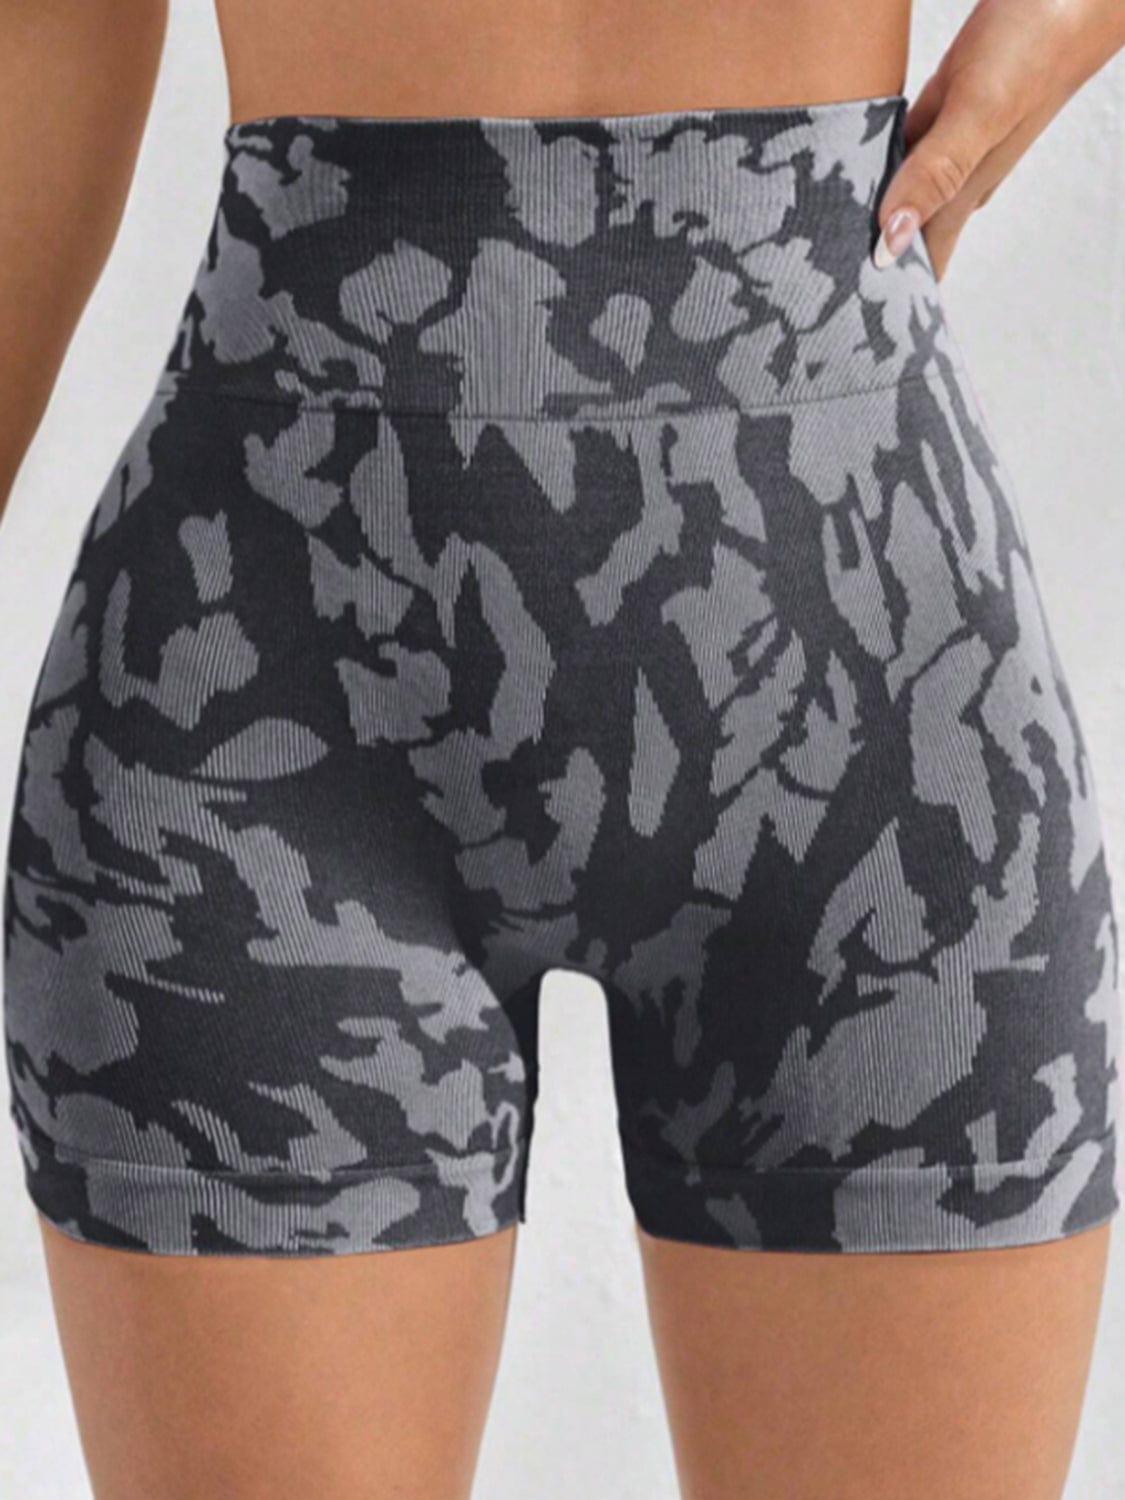 Trendsi ACTIVE SHORTS Printed High Waist Active Shorts